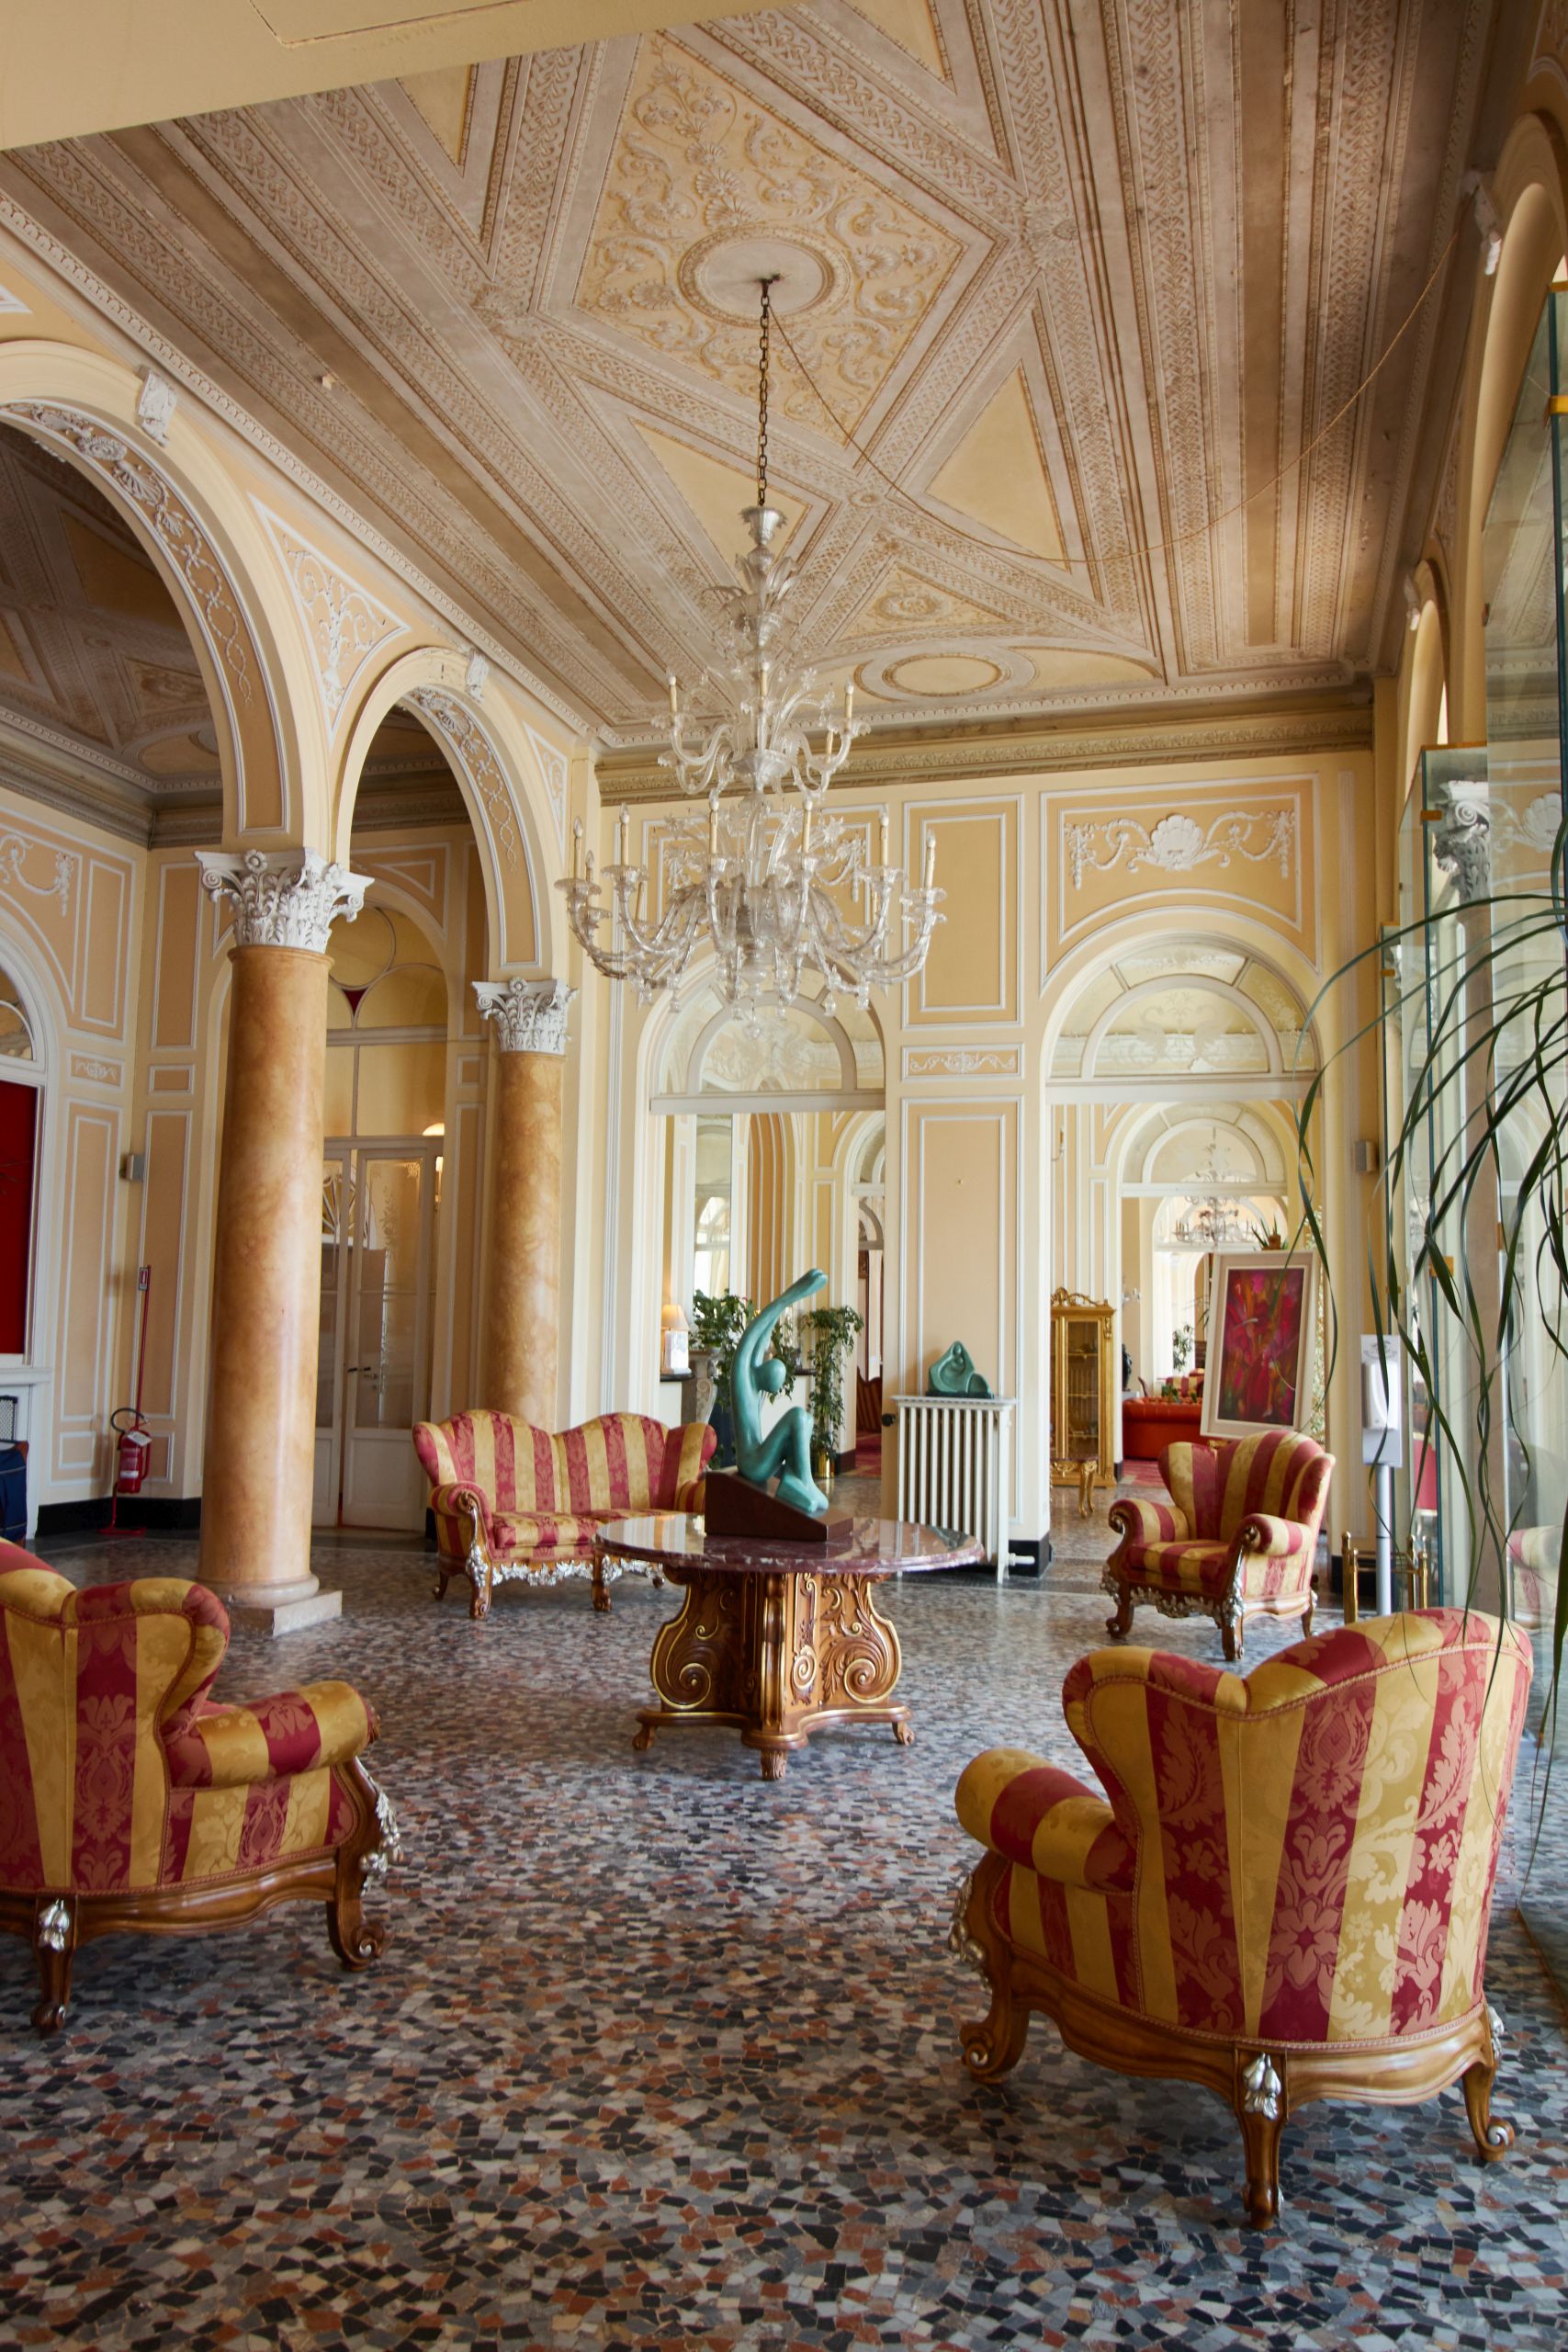 Grand Hotel Cadenabbia in Menaggio am Comer See als Auftakt vom Toskana Roadtrip